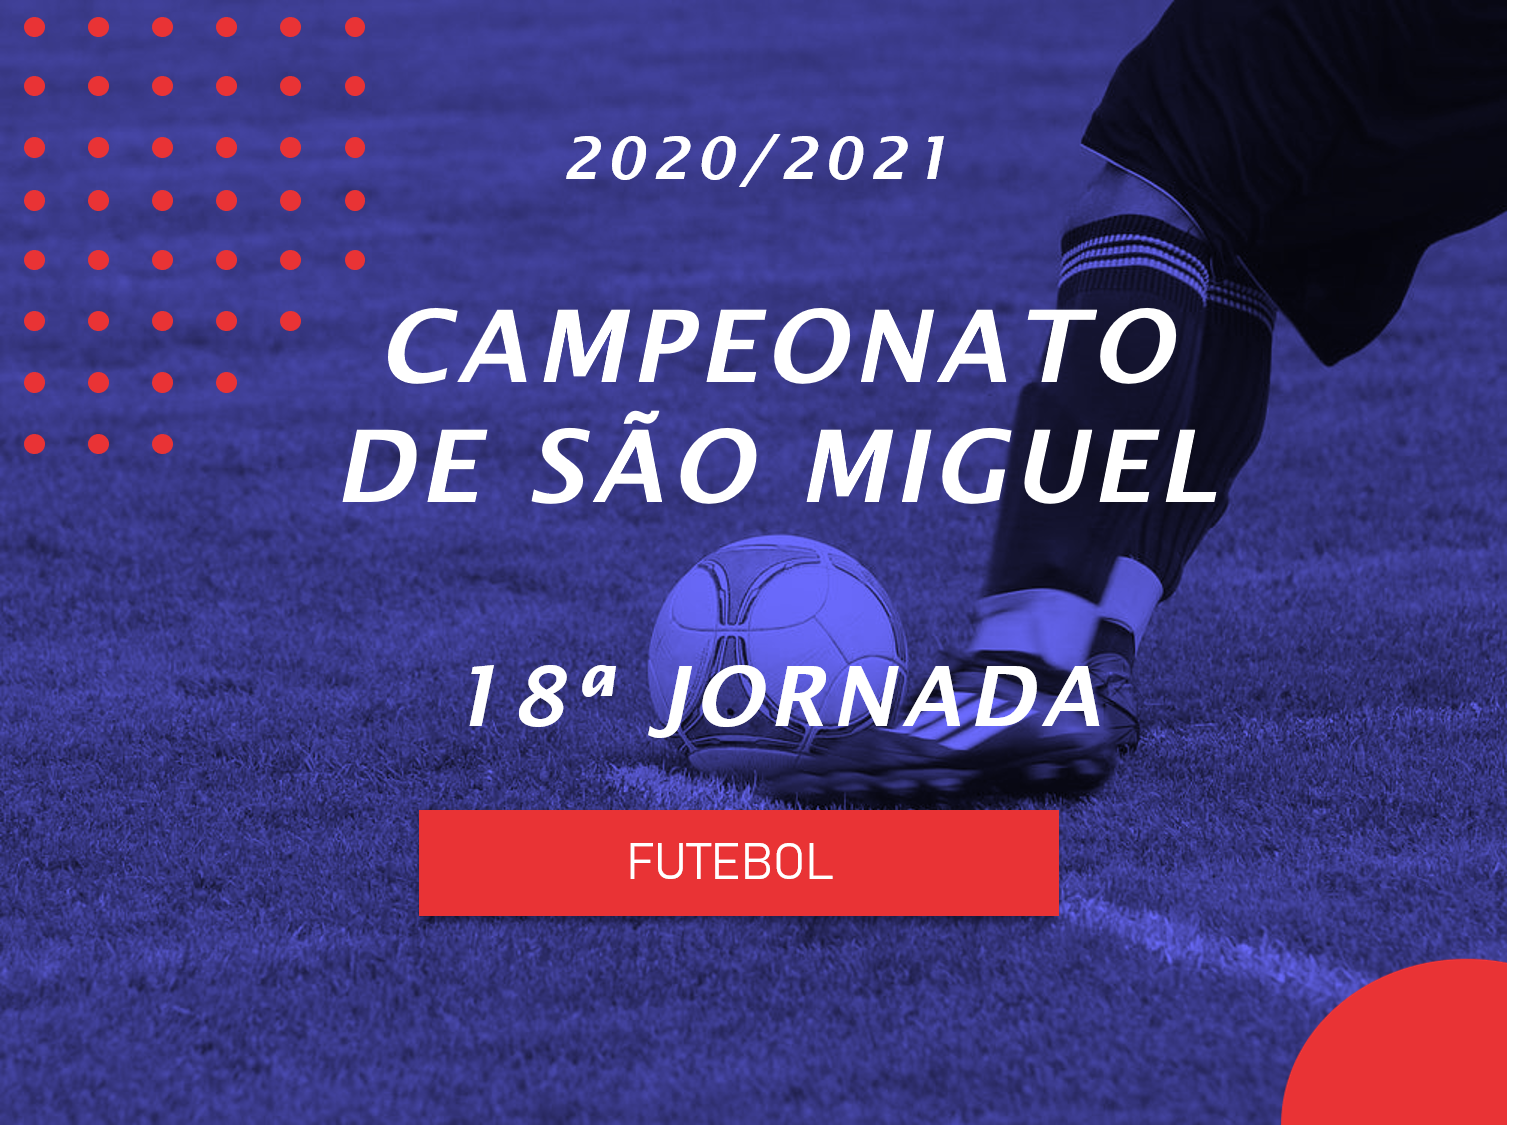 Campeonato de São Miguel - 18ª Jornada - Antevisão